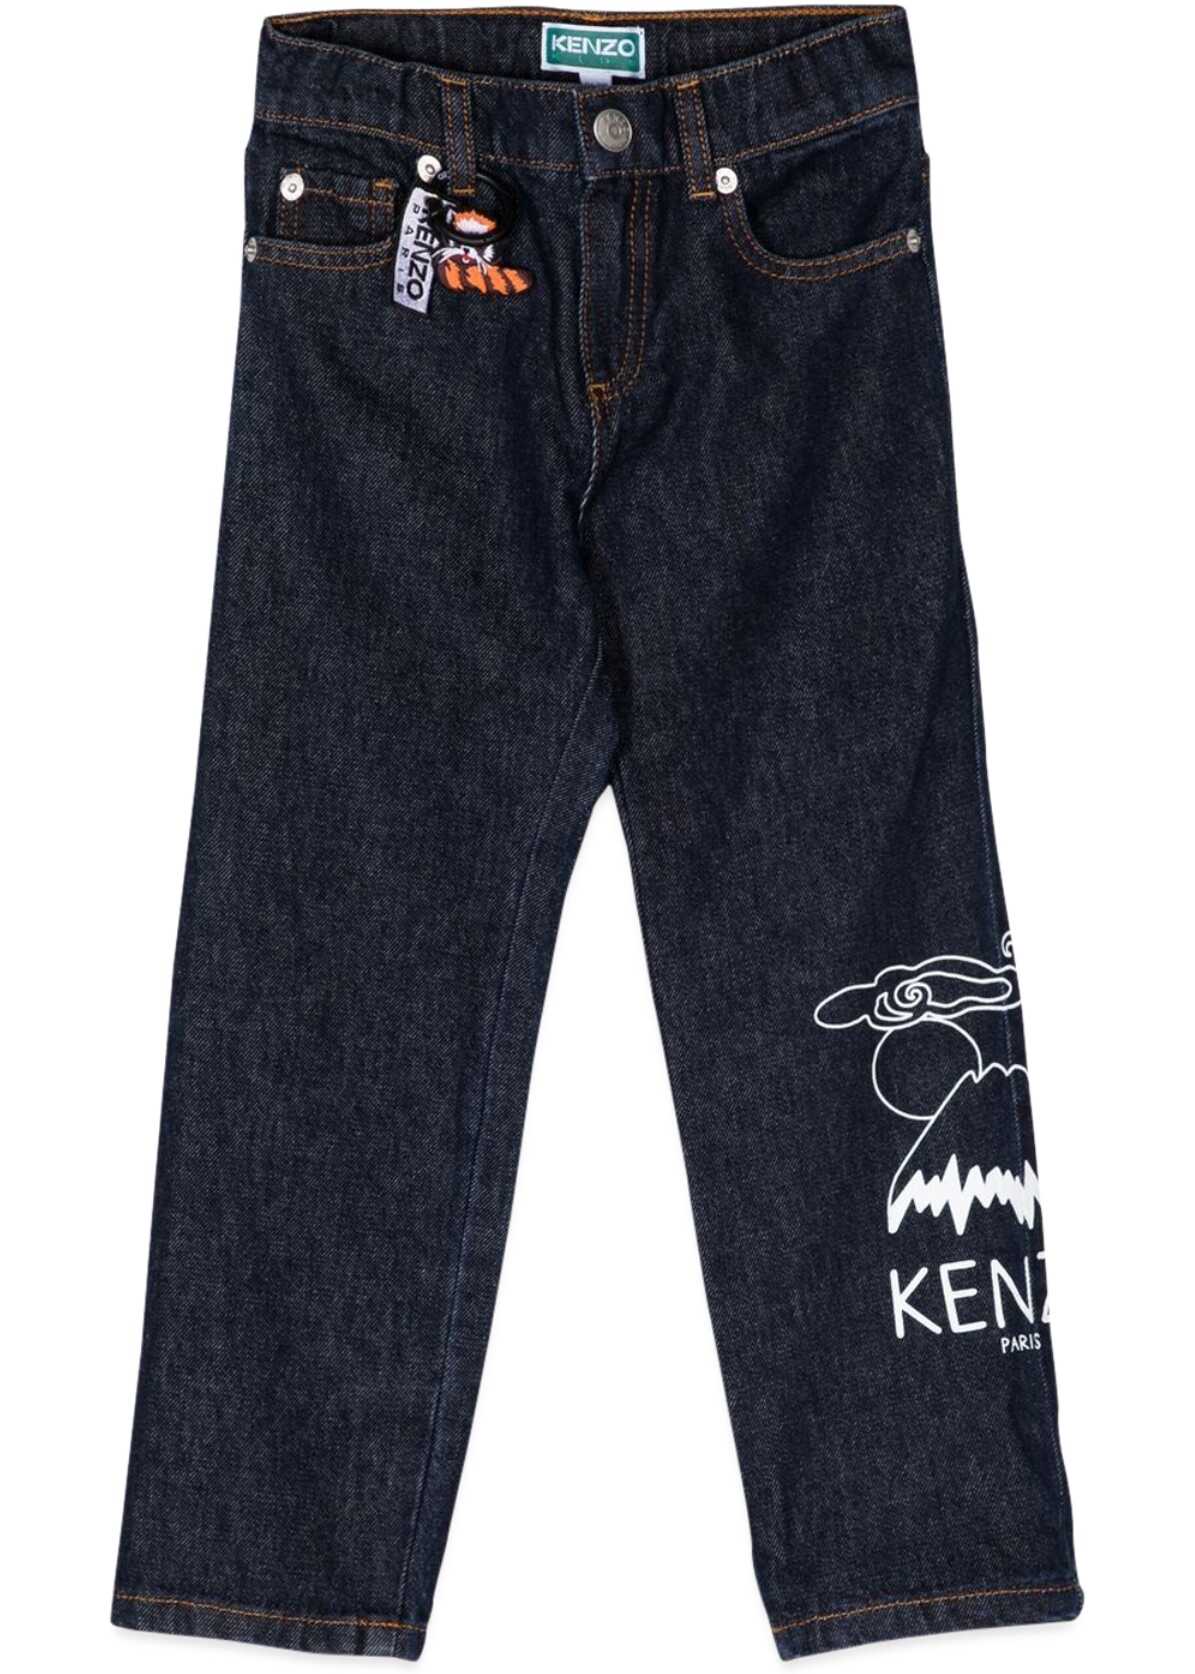 Poze Kenzo Kenzo Paris Jeans DENIM